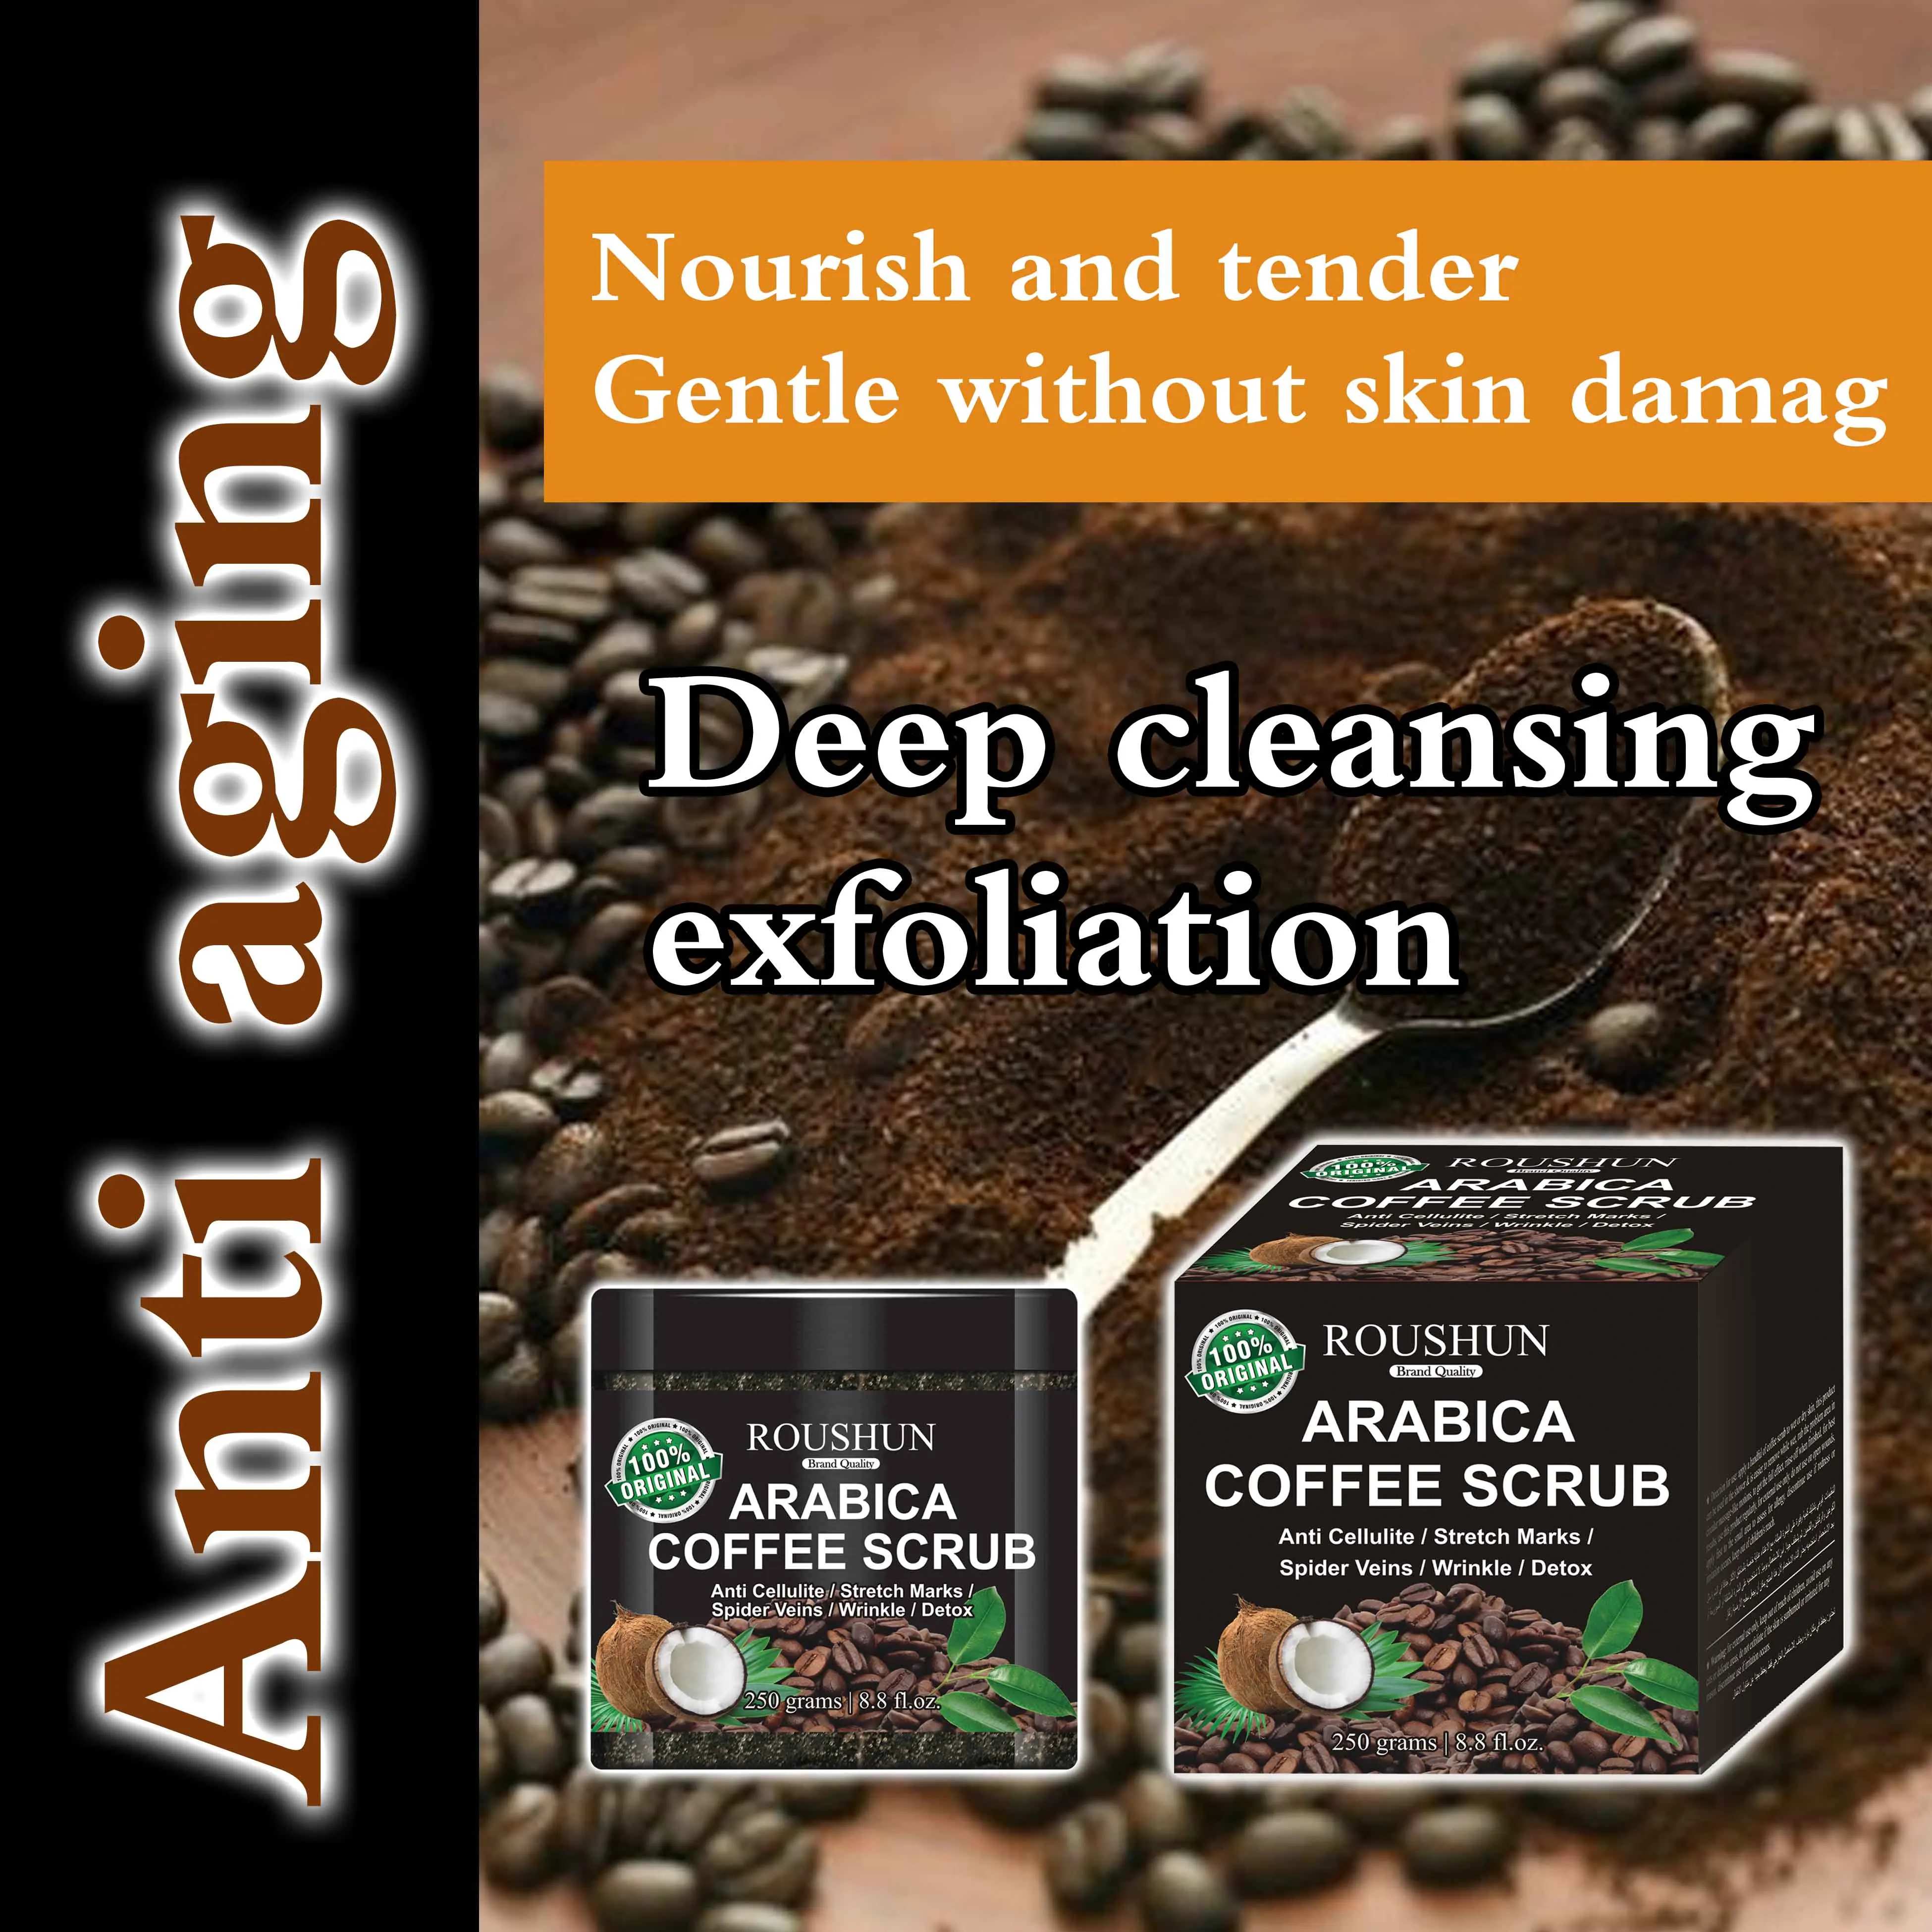 Arabica Coffee Body Scrub